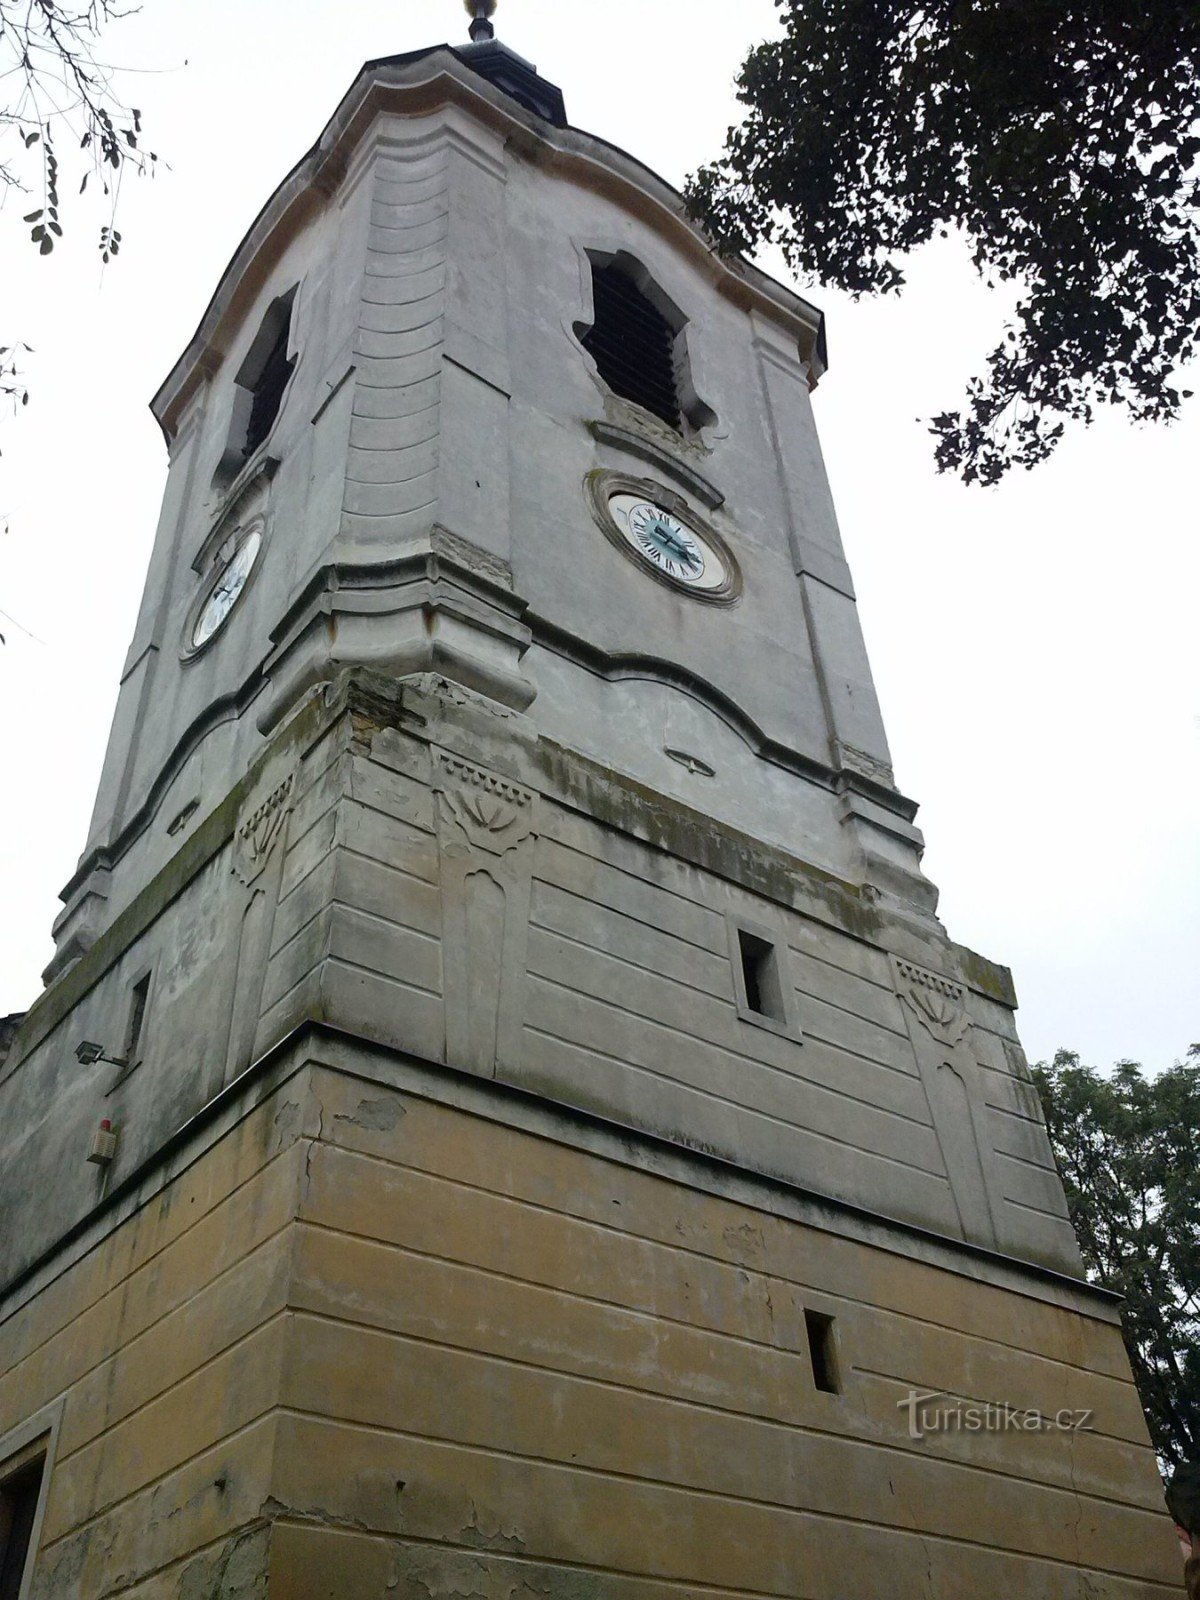 2.教会の塔